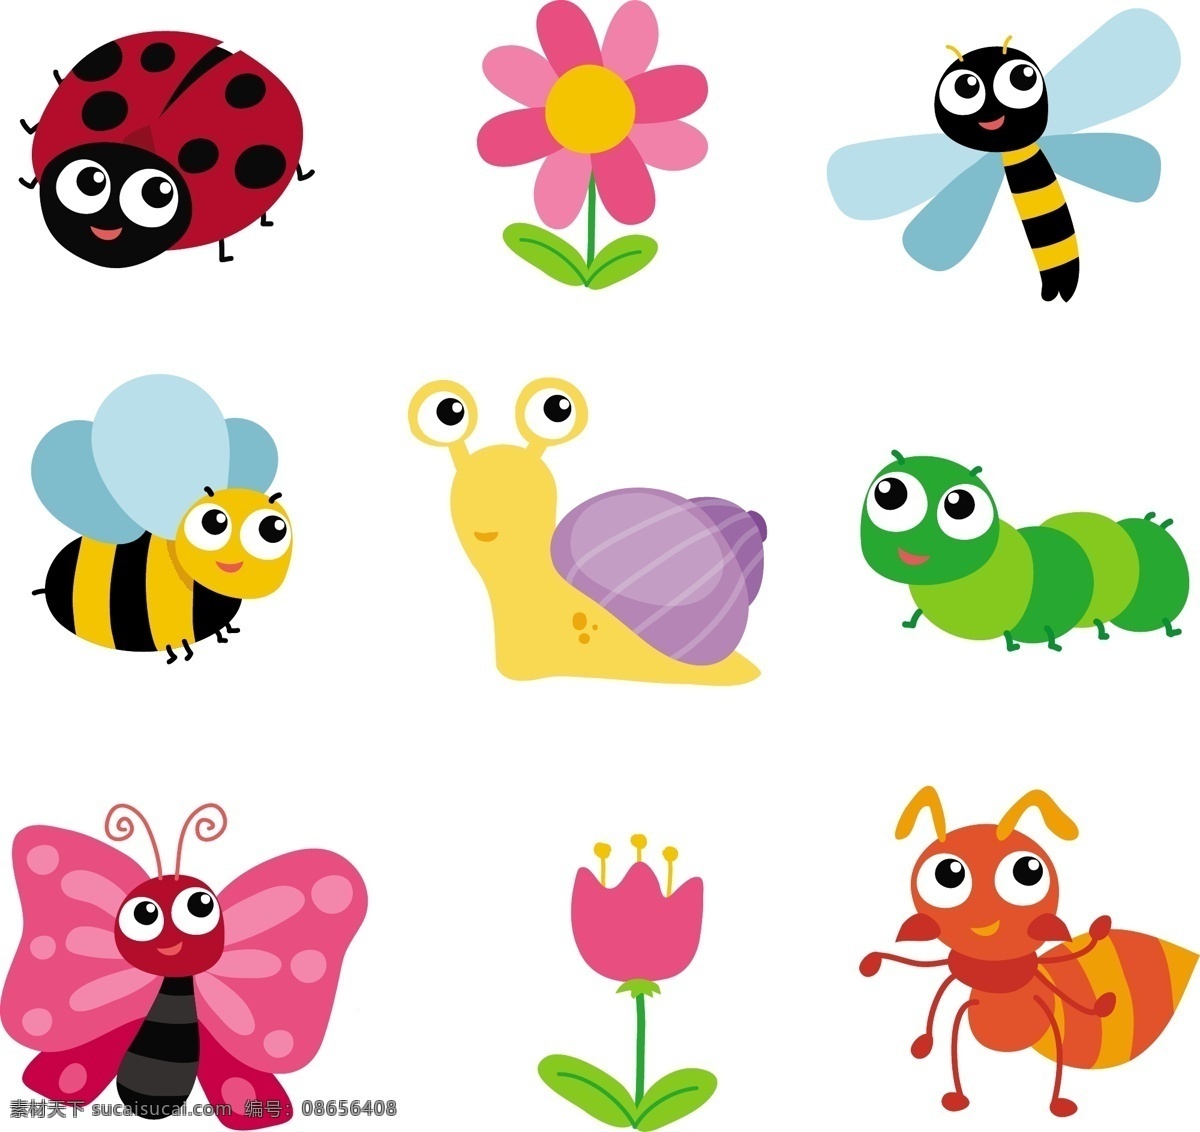 采集 蝴蝶 花卉 卡通动物 昆虫 蚂蚁 蜜蜂 瓢虫 蜗牛